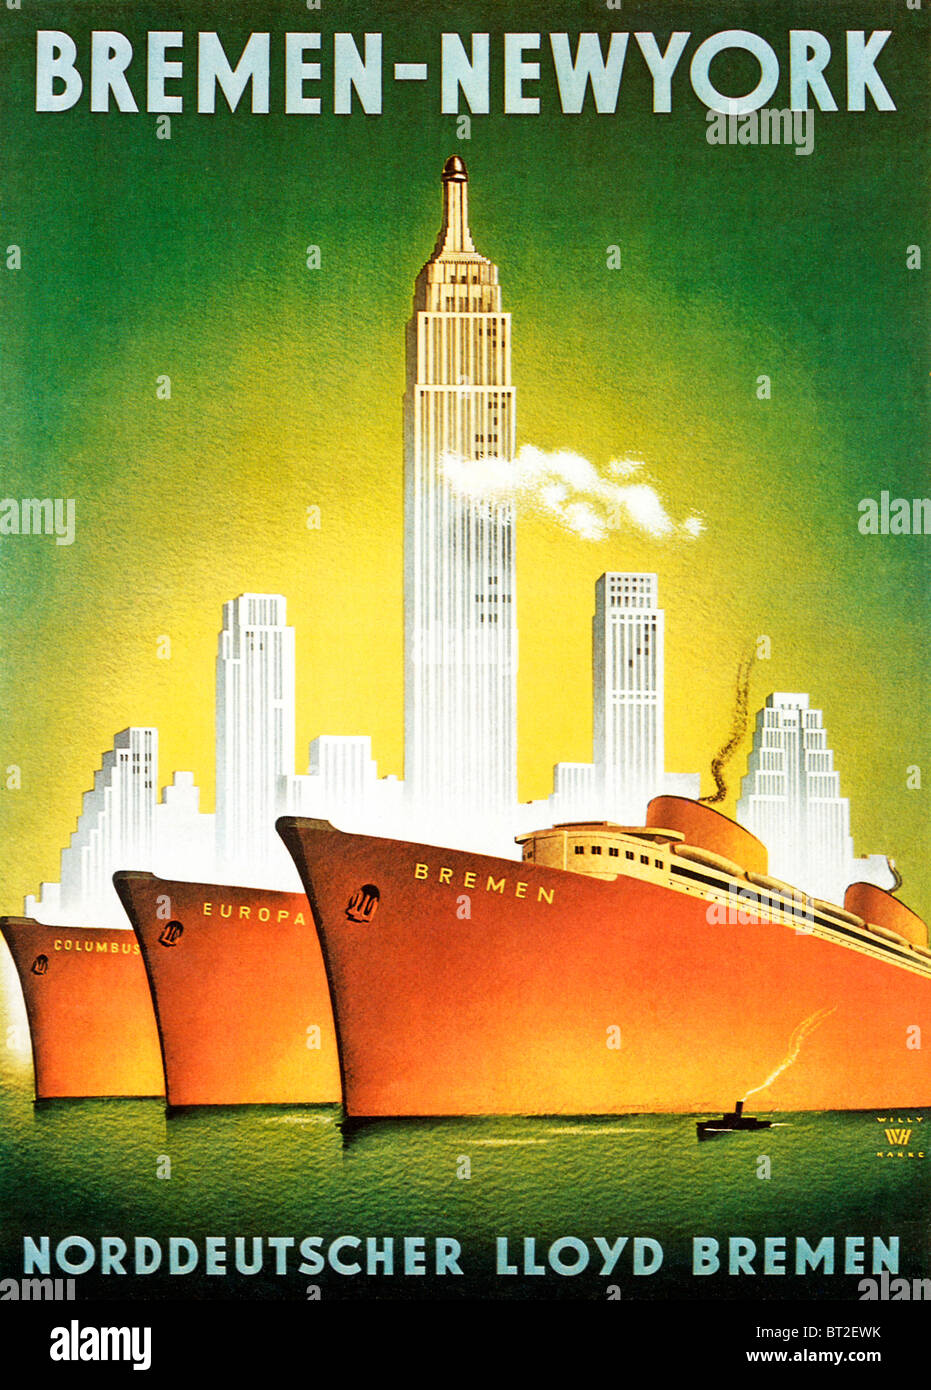 Bremen nach New York, 1920er-Jahre Art-Deco-Plakat für den Norddeutschen Lloyd Bremen-Linie von Europa nach Amerika zu segeln Stockfoto